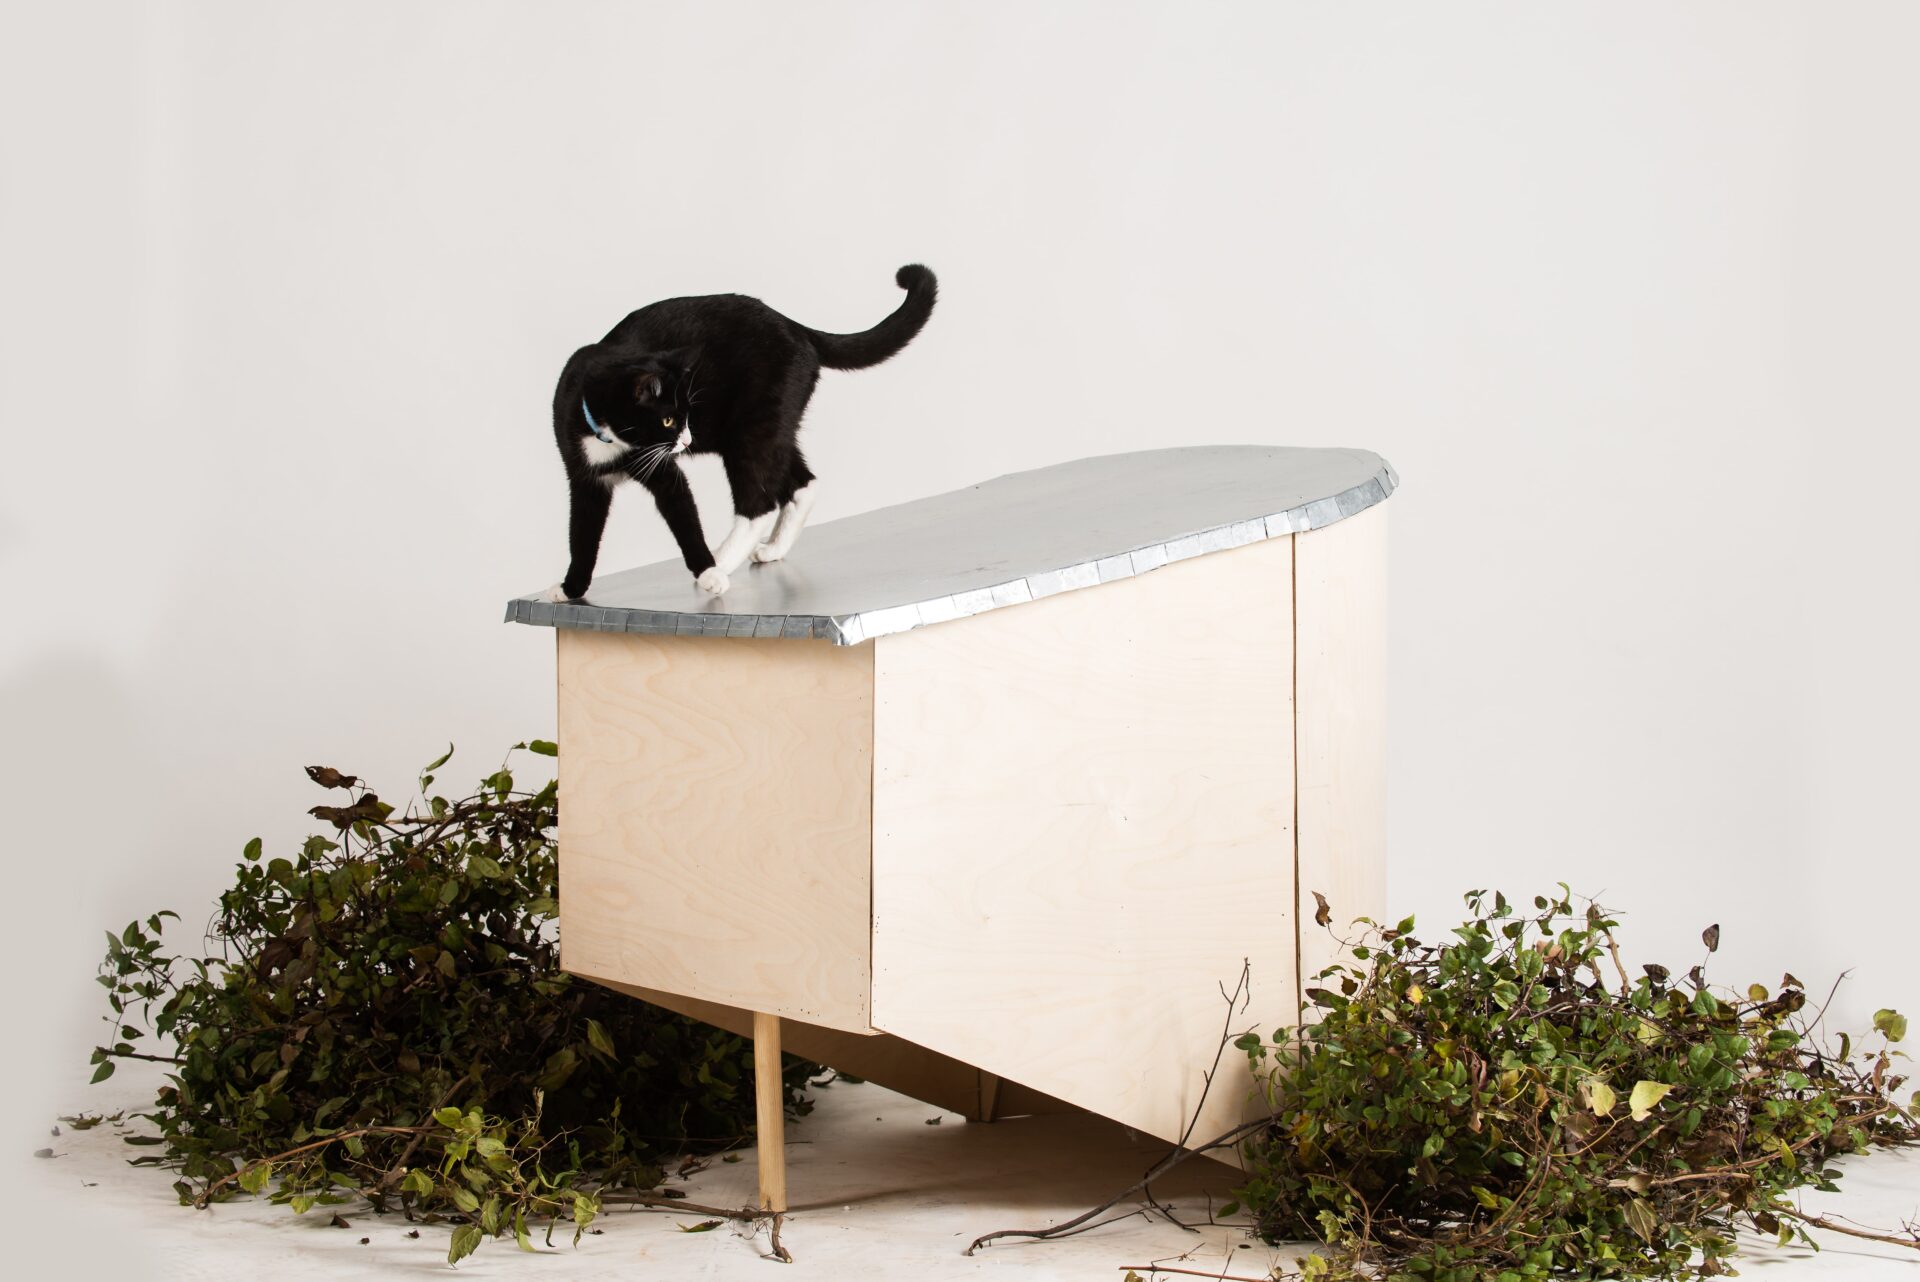 Sesja zdjęciowa ilustruje efekt warsztatów: kotek obserwuje otoczenie z poziomu dachu drewnianego domku